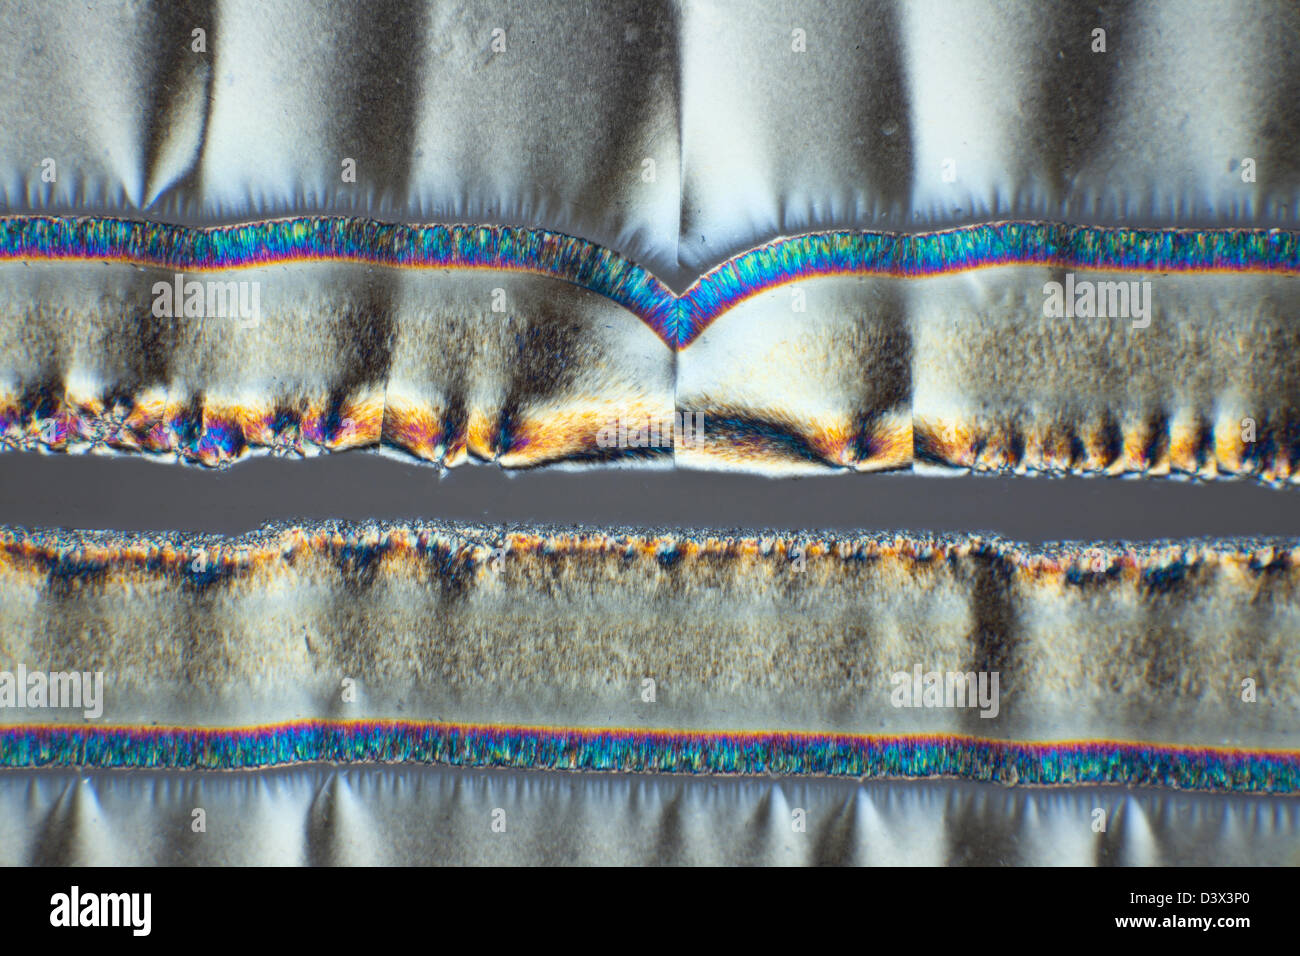 Cruz microfotografía polarizada, ácido ascórbico, vitamina C, estructuras cristalinas Foto de stock